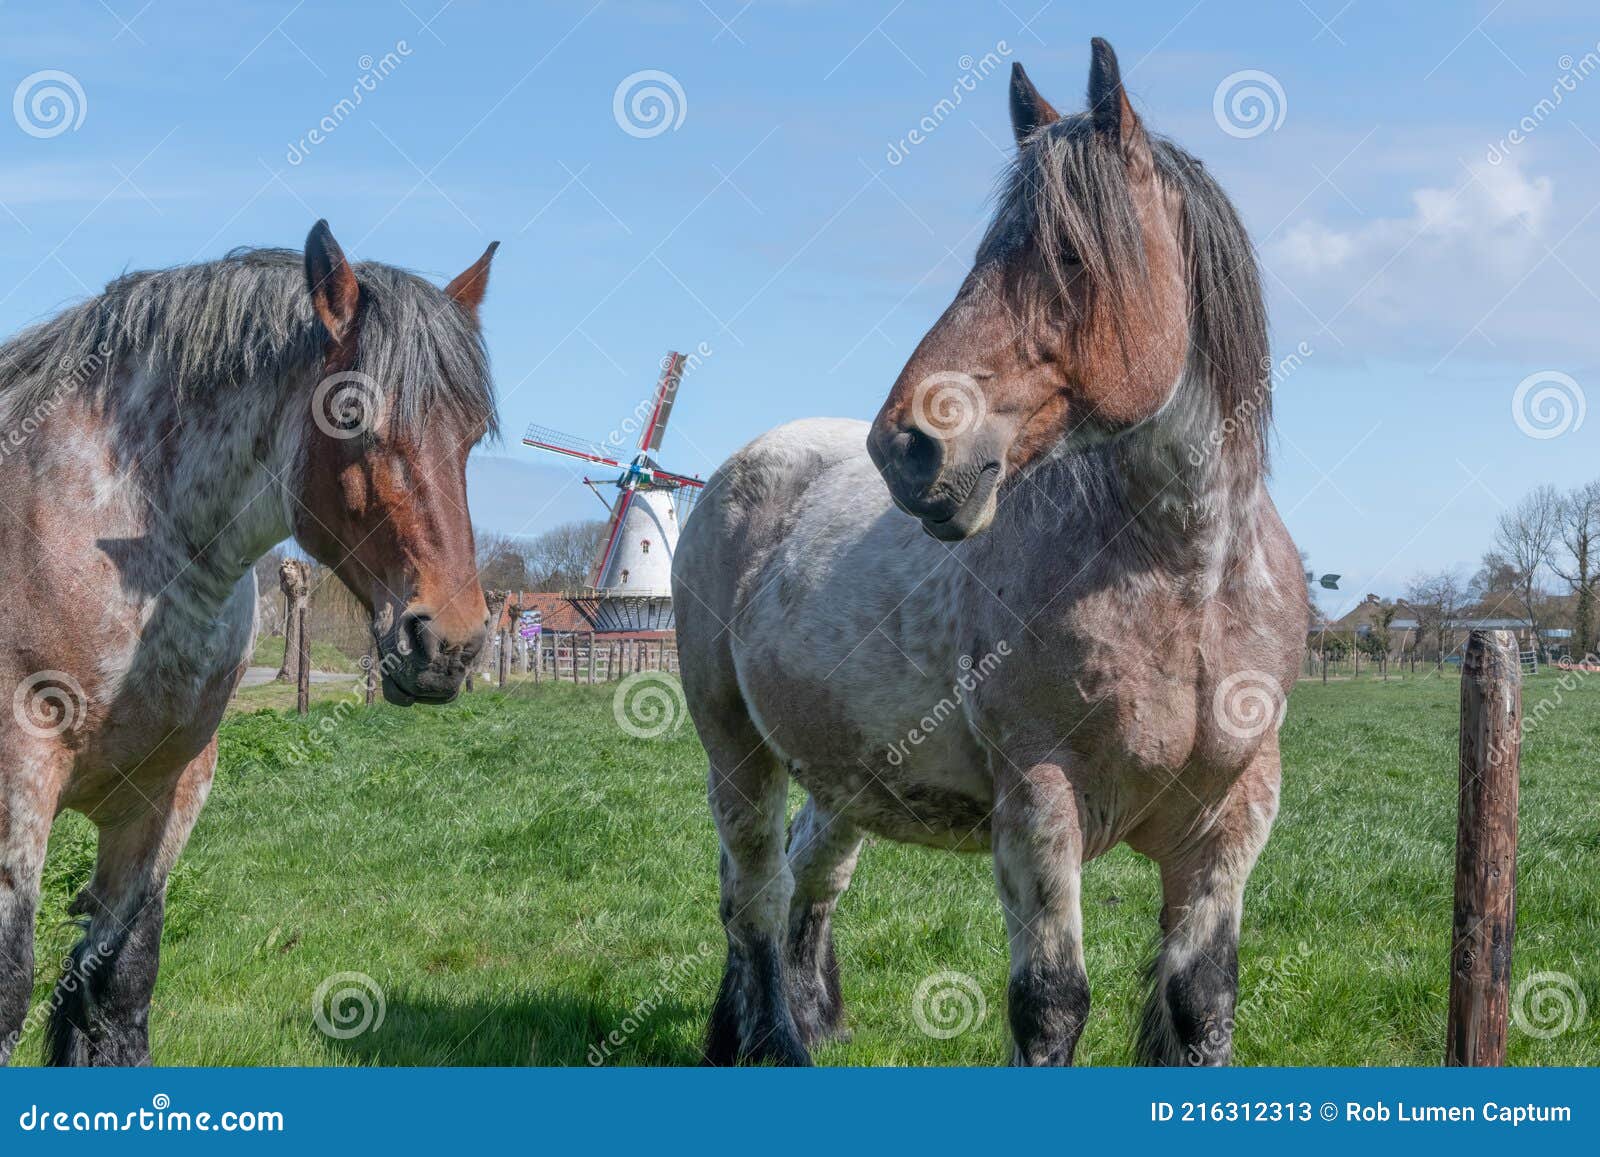 Roos het einde Voorspeller Twee Grote Paarden Met Traditionele Windmolen Stock Afbeelding - Image of  windmolen, traditioneel: 216312313